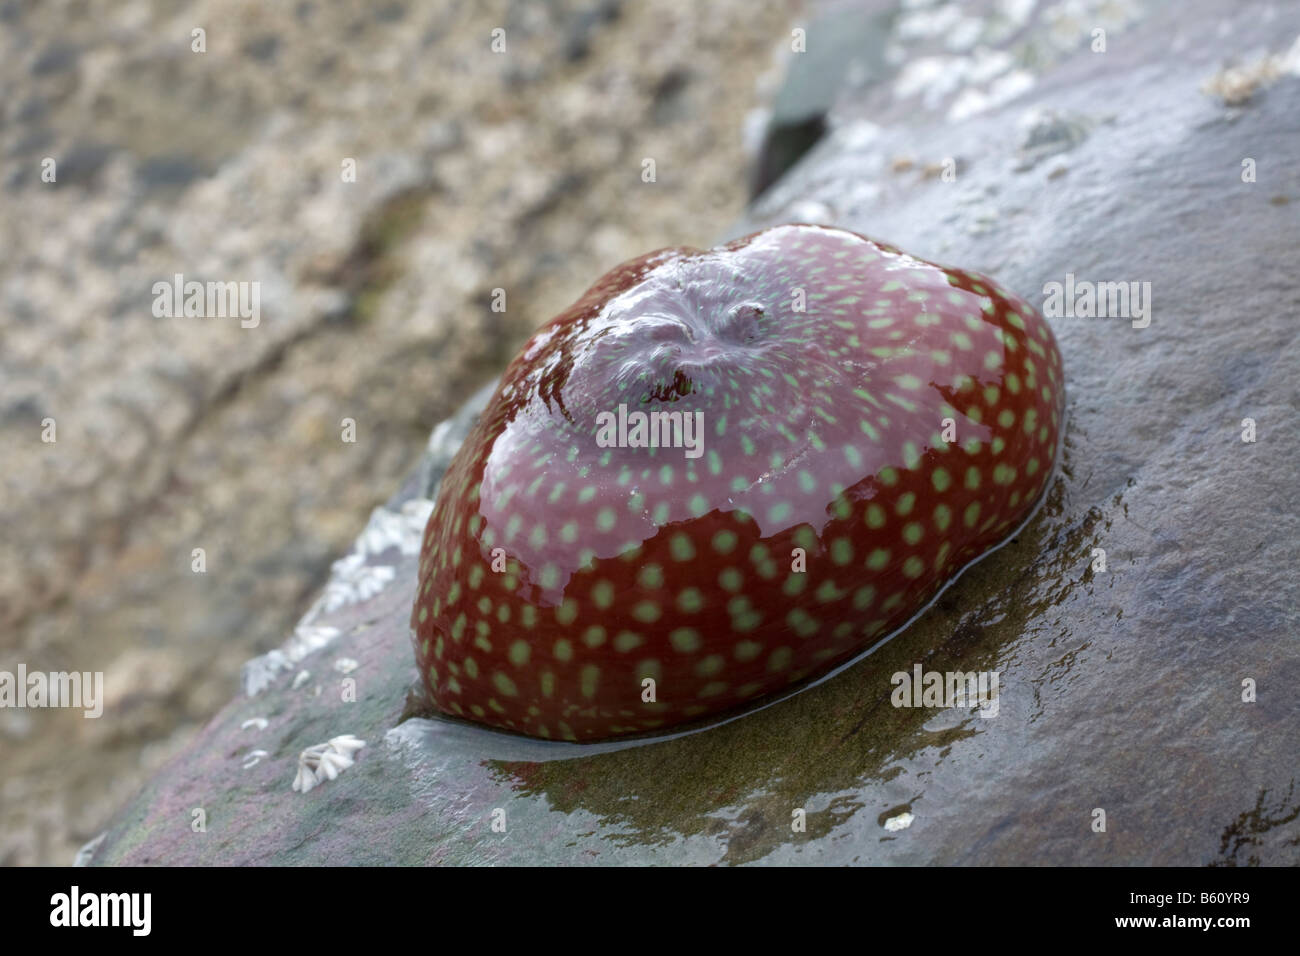 strawberry anemone Actinia fragacea Stock Photo